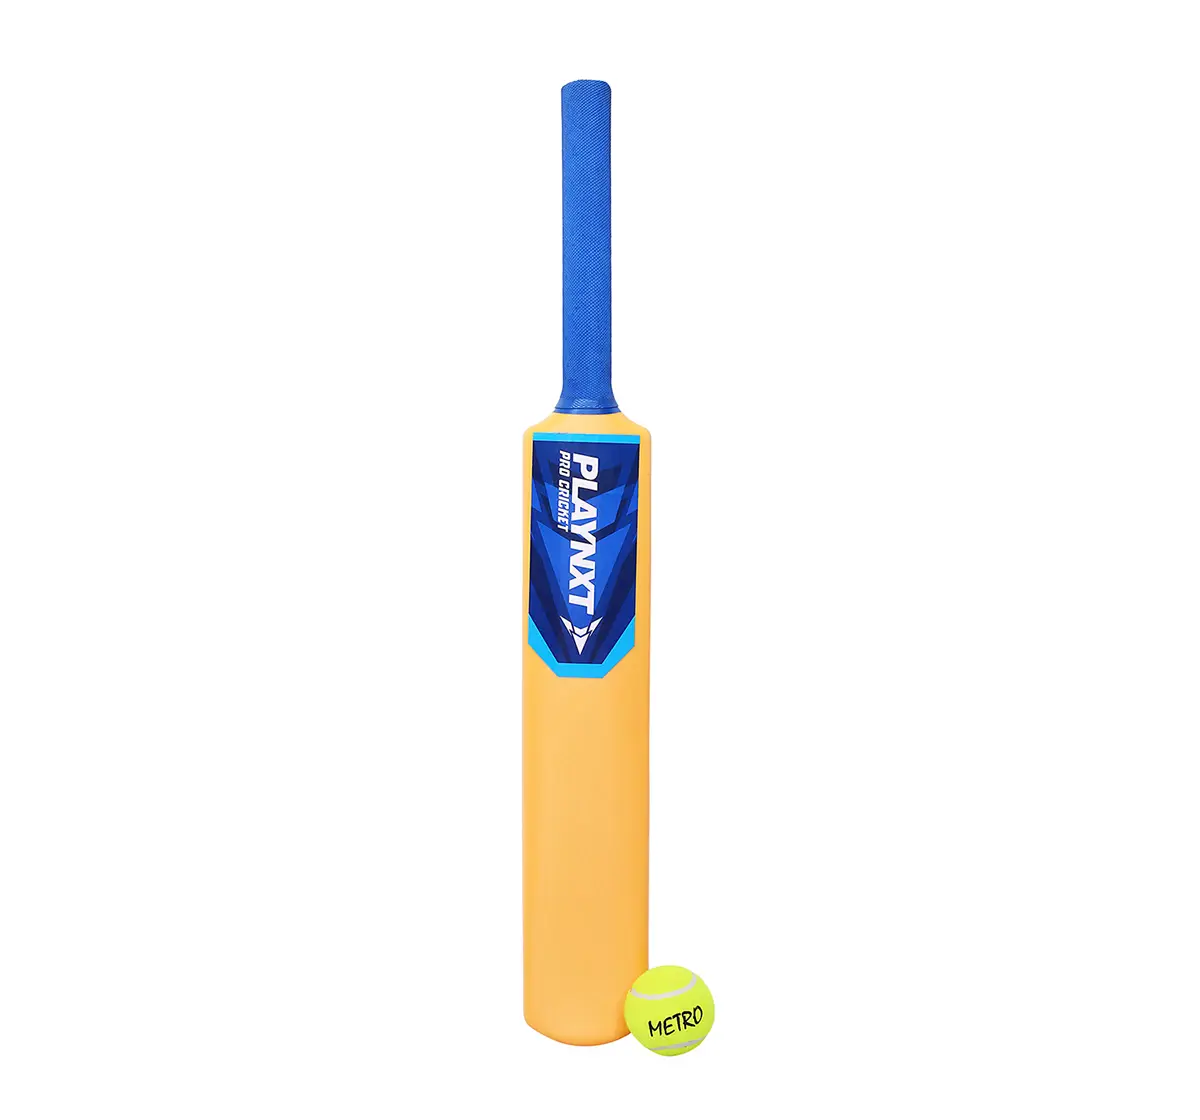 Playnxt Pro Cricket Bat No. 4 Outdoor Sports for age 8Y+ (Orange)